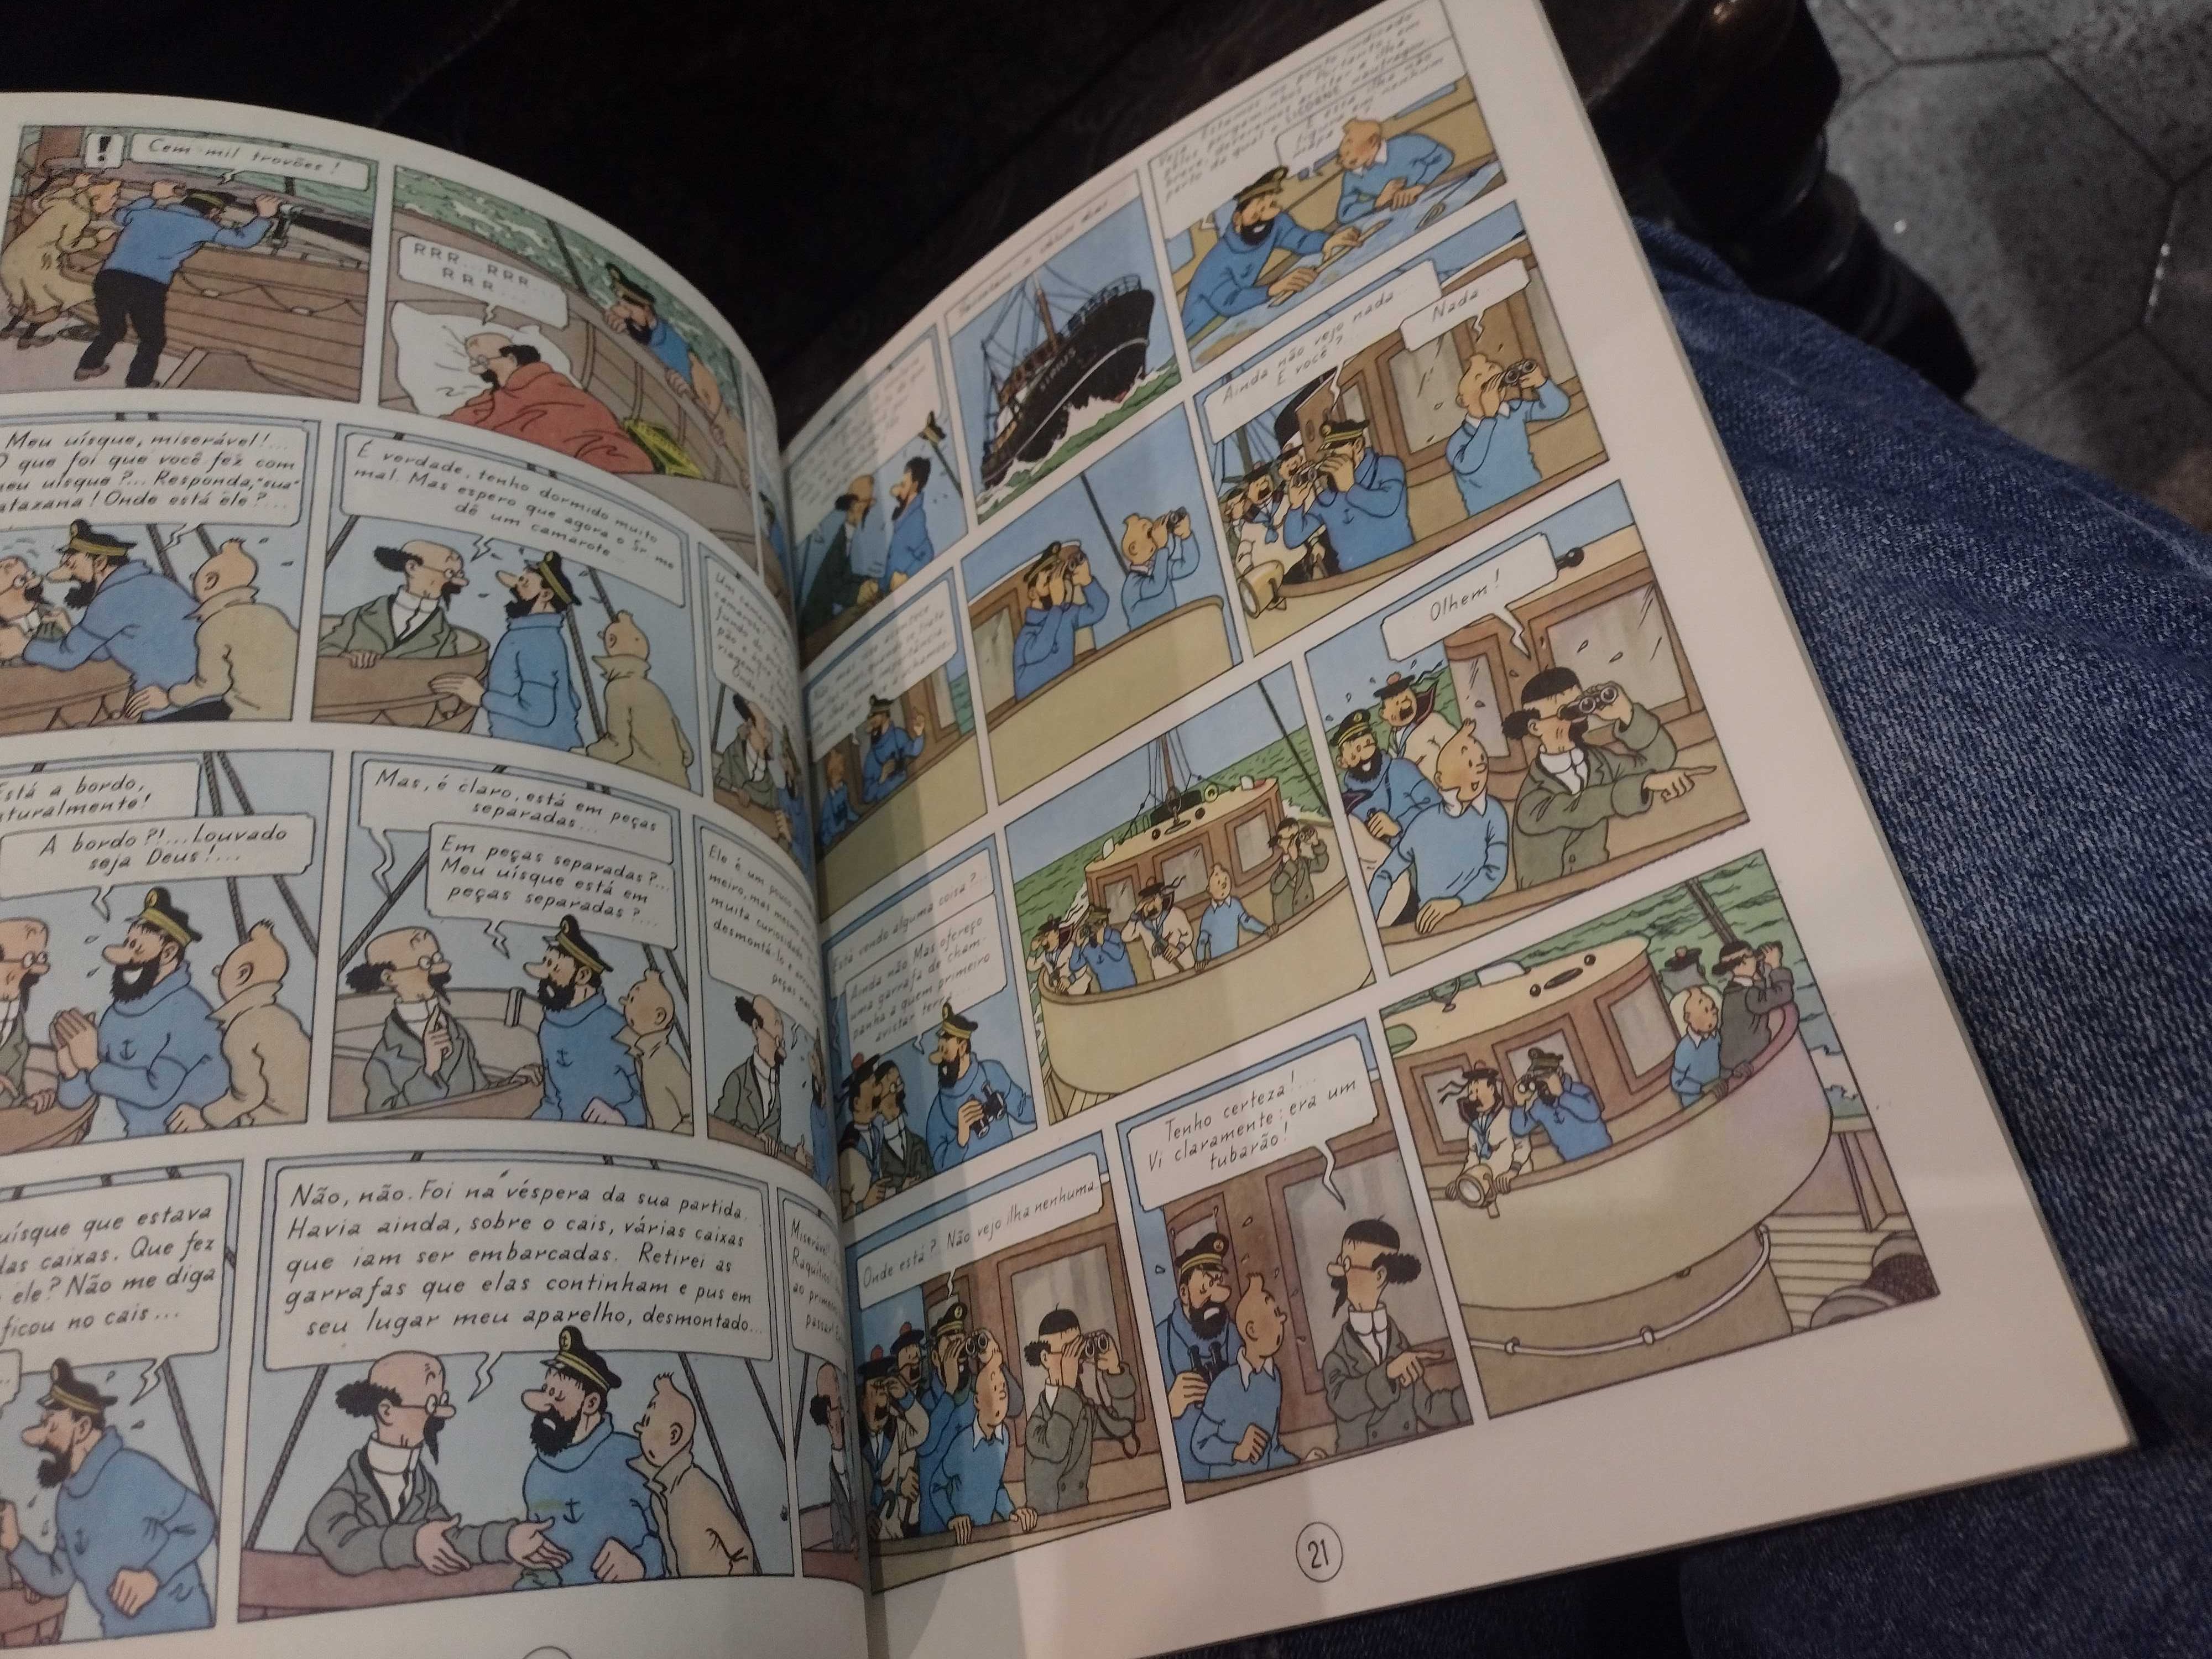 Tintim O Tesouro de Rackham o Terrível "Record" "Hergé"